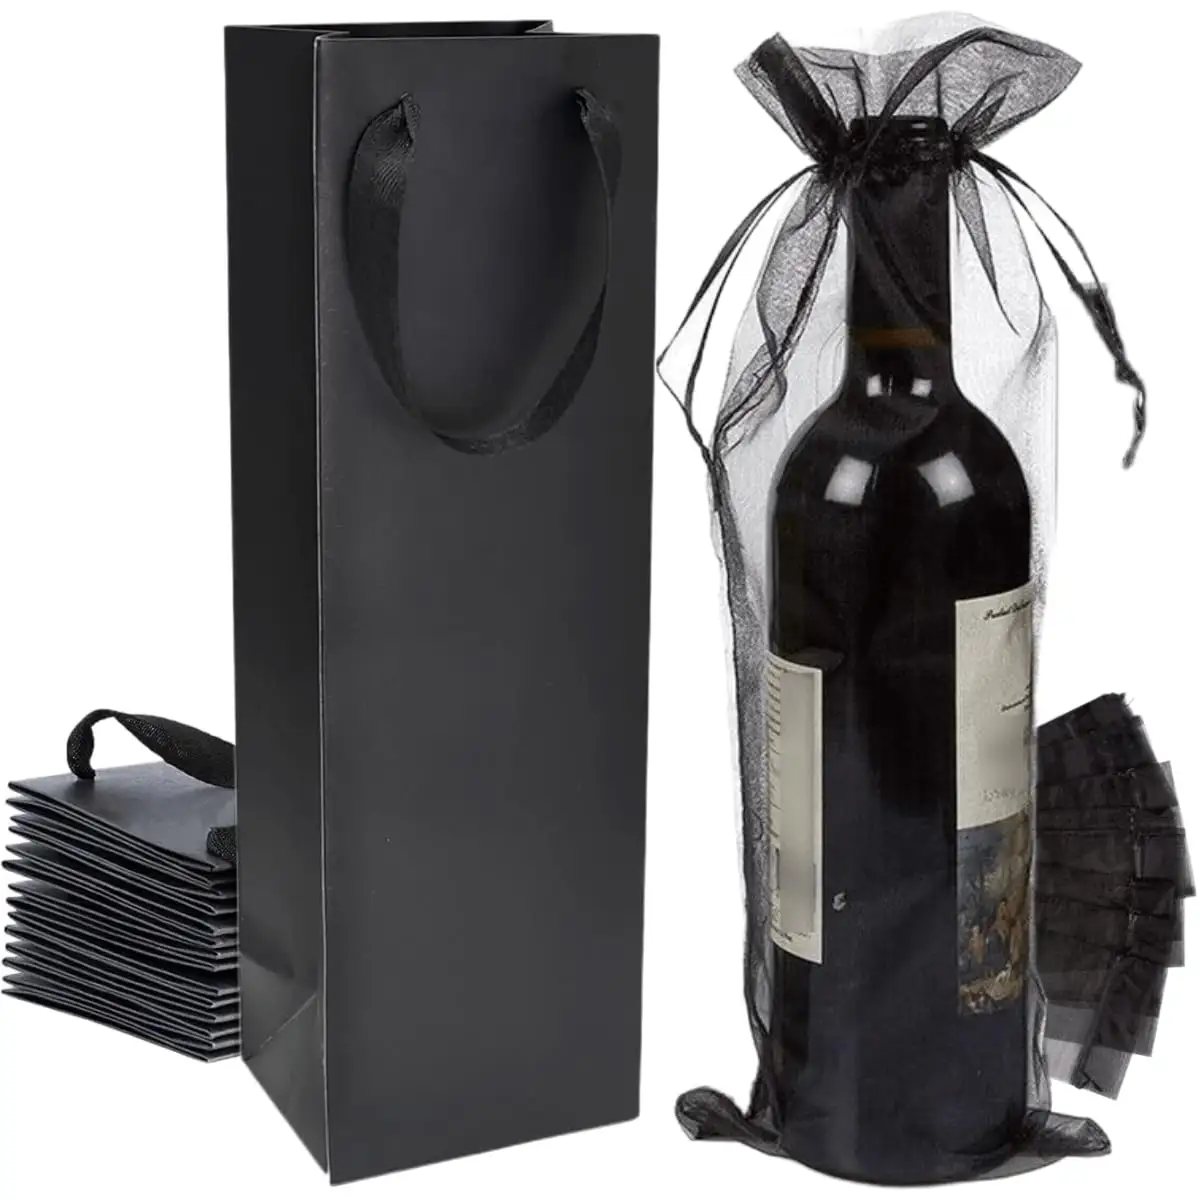 Venta al por mayor a granel simplicidad reutilizable Tote botella de vino negro regalo bolsa de papel Kraft con embalaje de organza